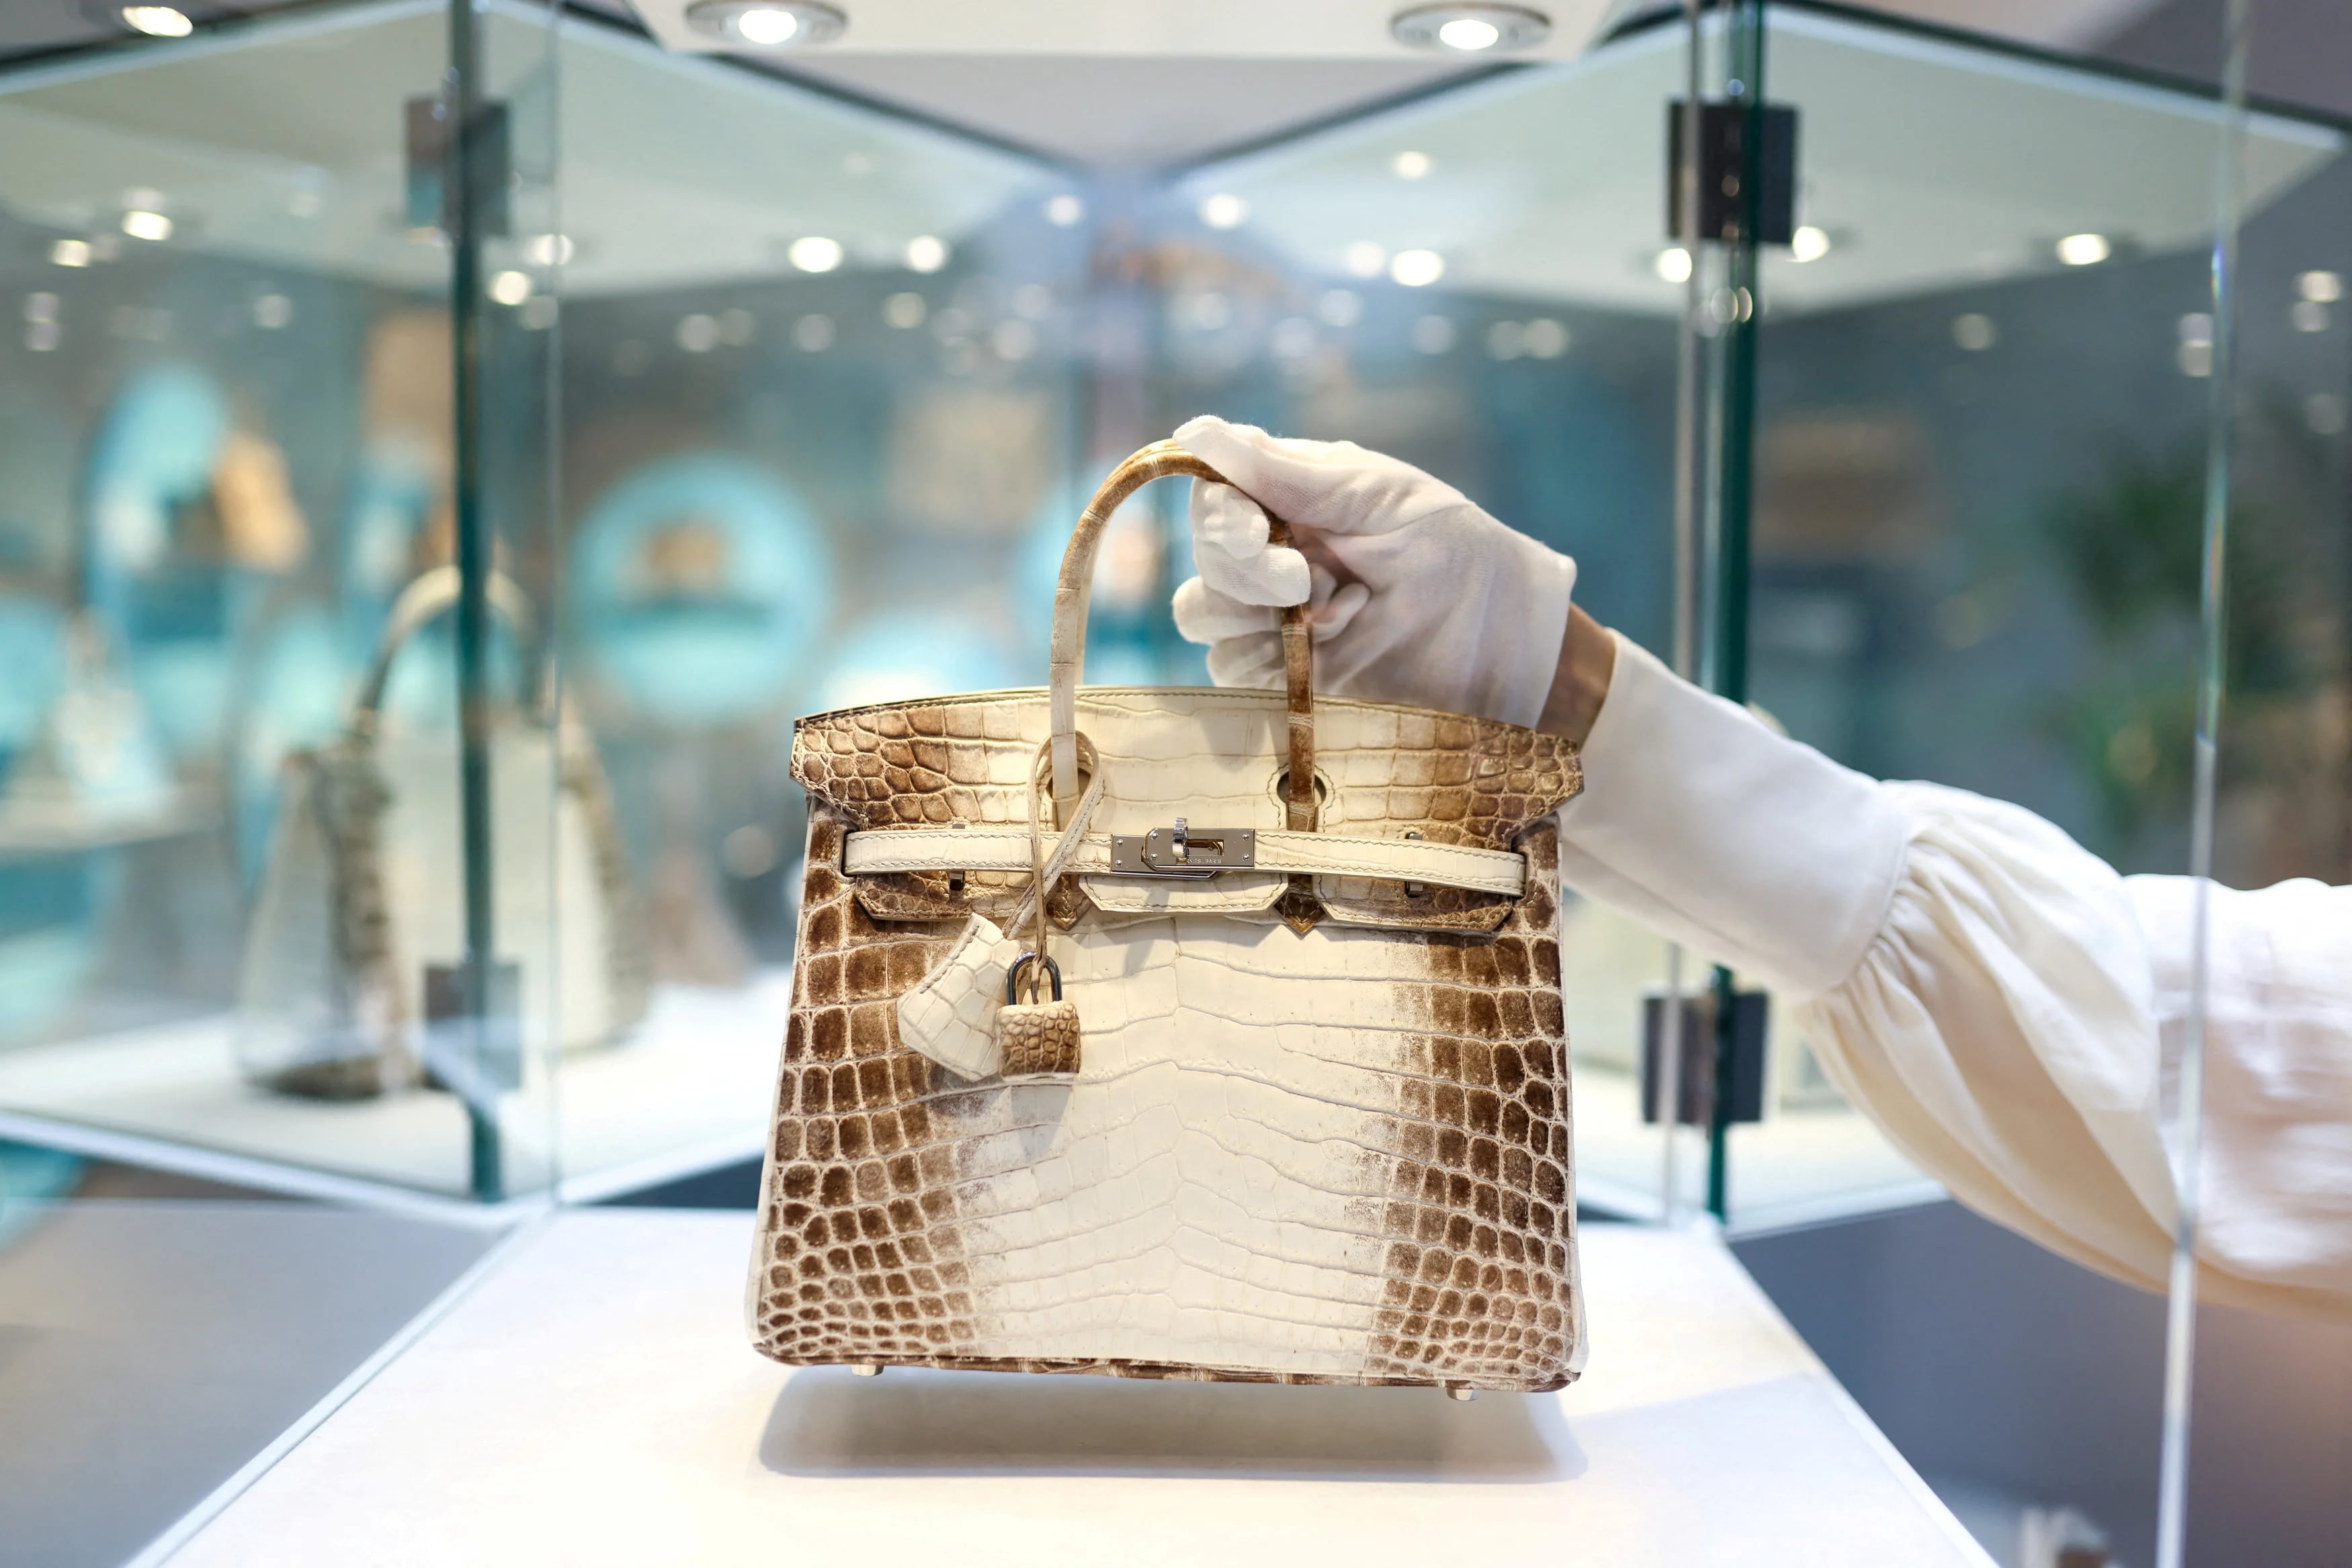 Jane Birkin inspiró la creación de los bolsos Hermes Birkin, que ahora se cotizan en miles de dólares
REUTERS/Tom Nicholson/File Photo